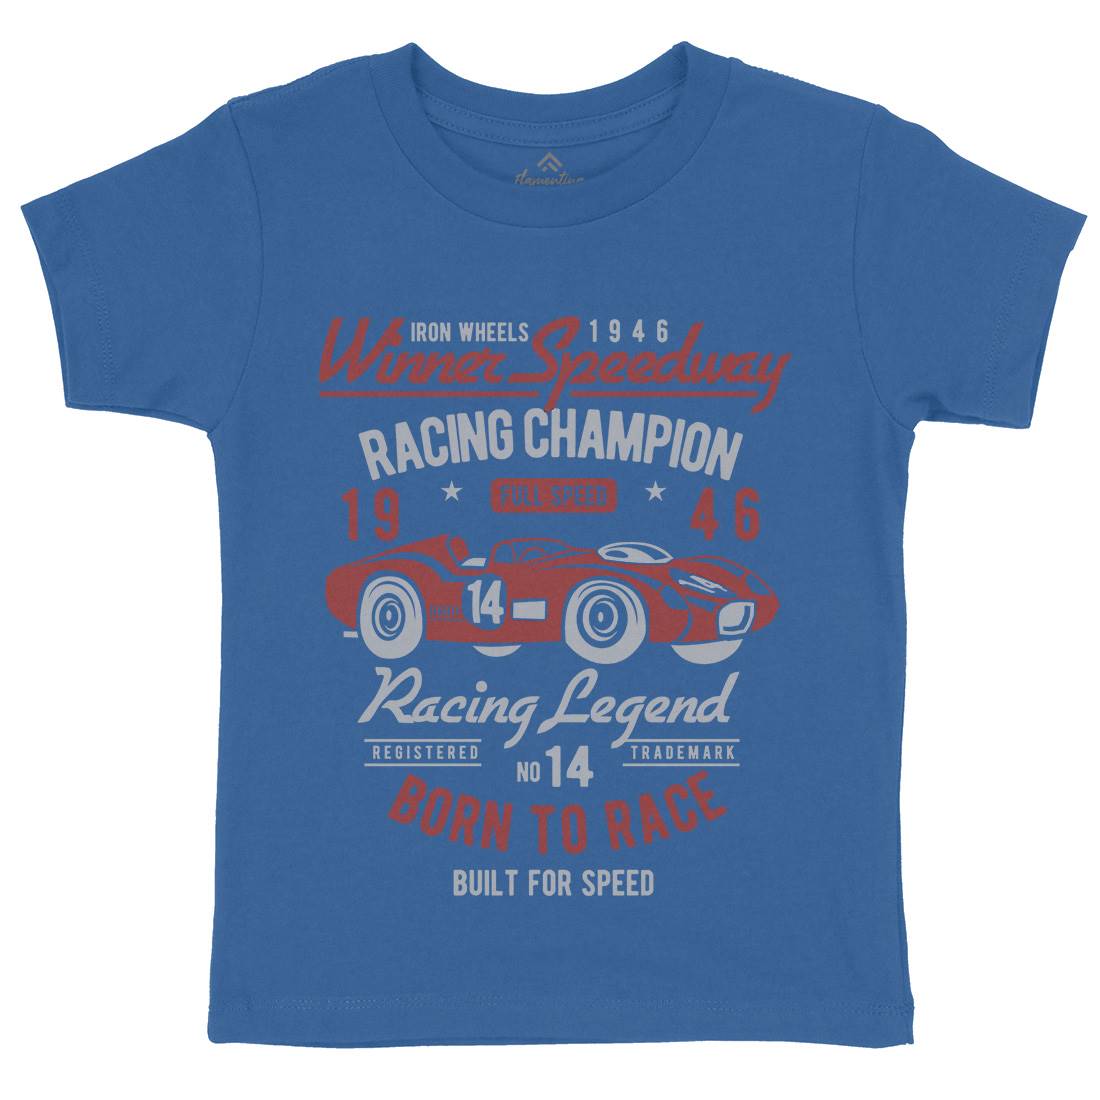 Winner Speedway Kids Crew Neck T-Shirt Cars B476